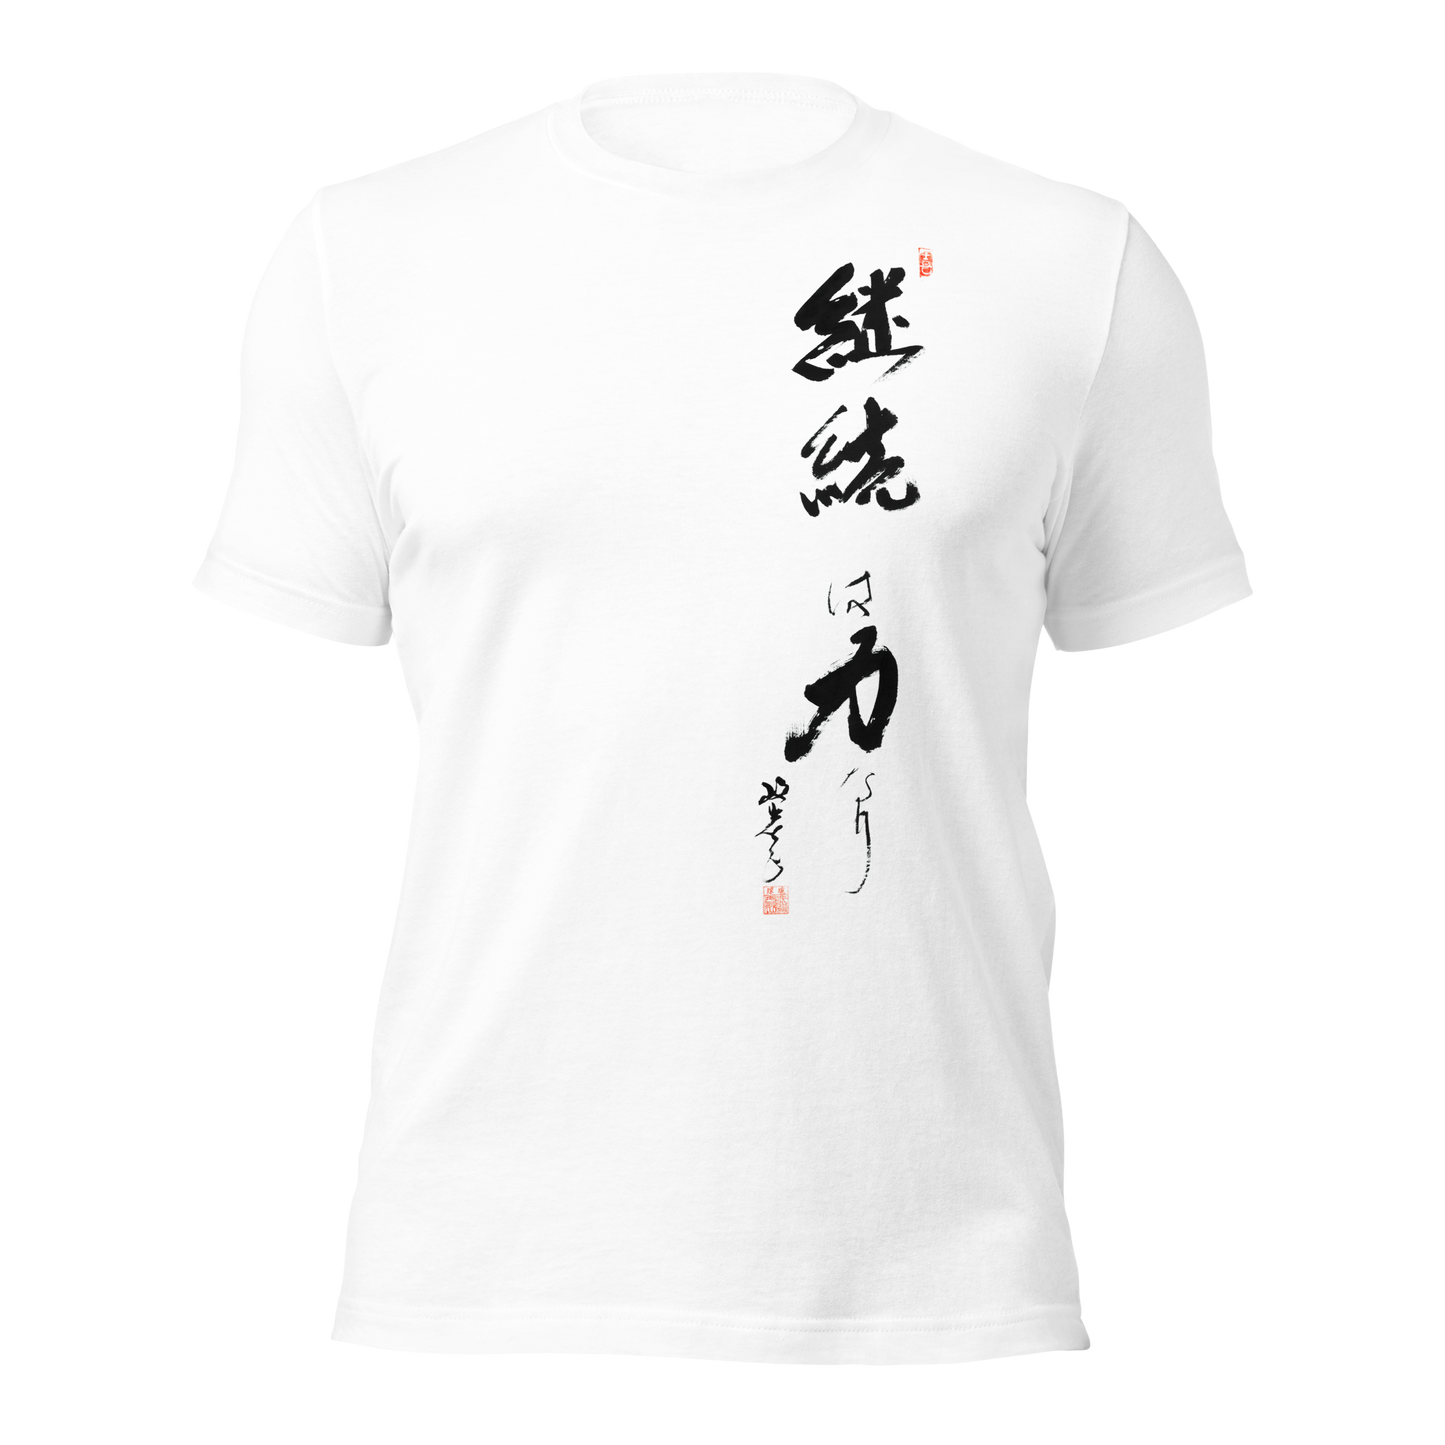 Calligraphy T-Shirts | 継続は力なり  Keizokuwa Chikaranari